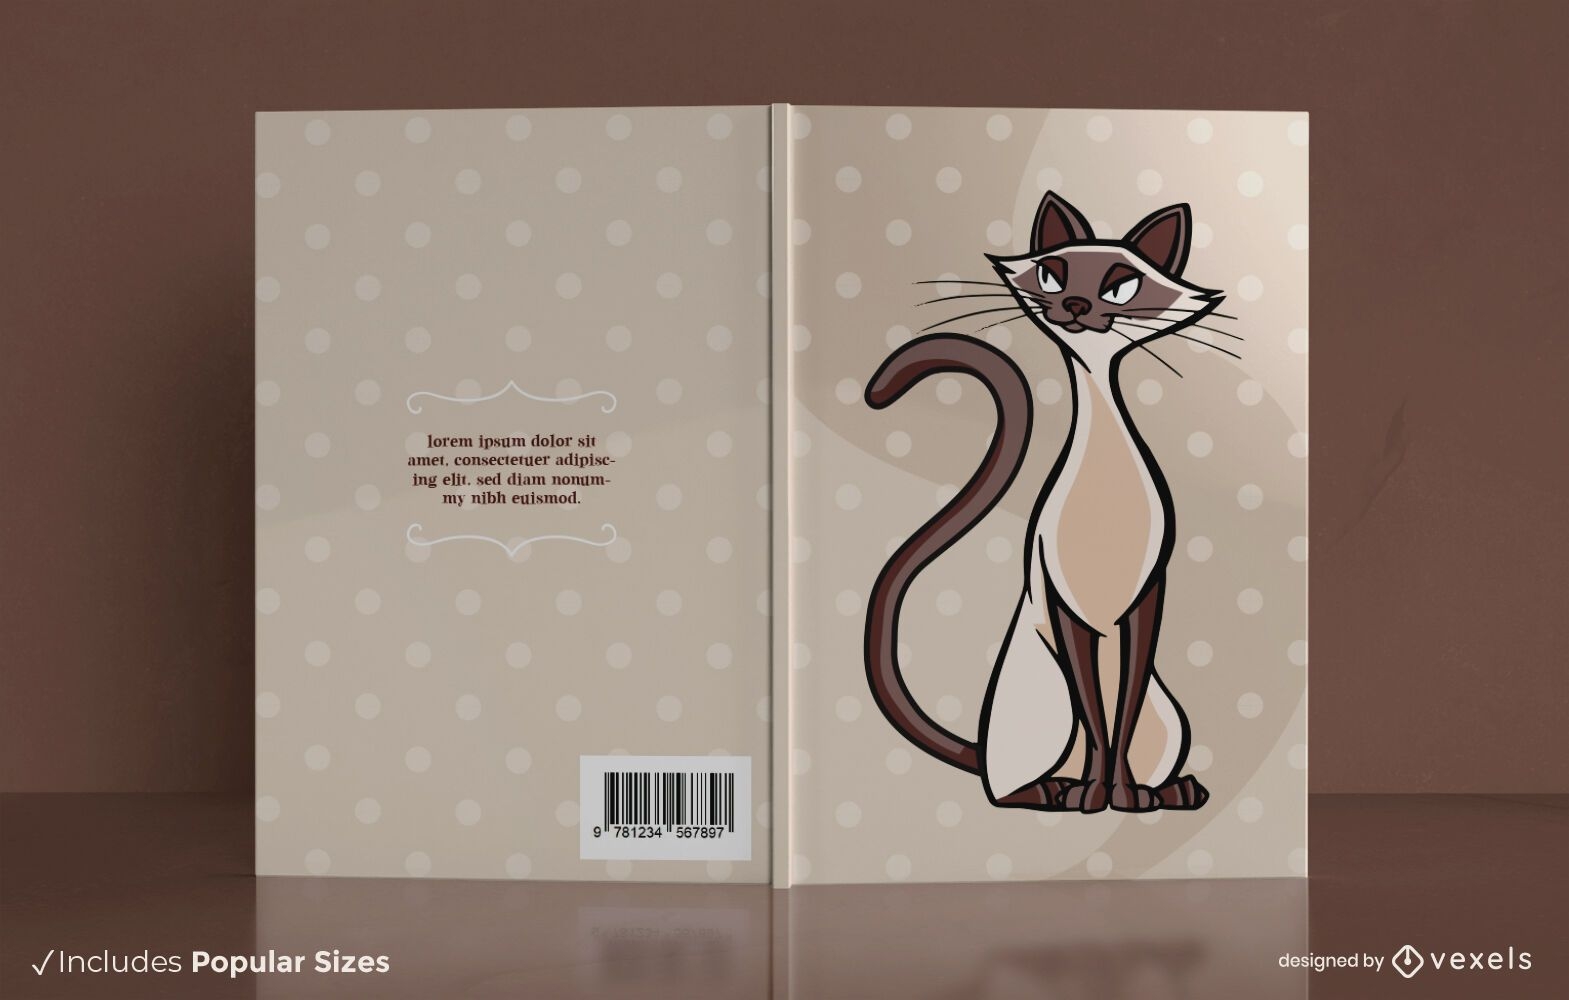 Buchcover-Design f?r siamesische Katzen